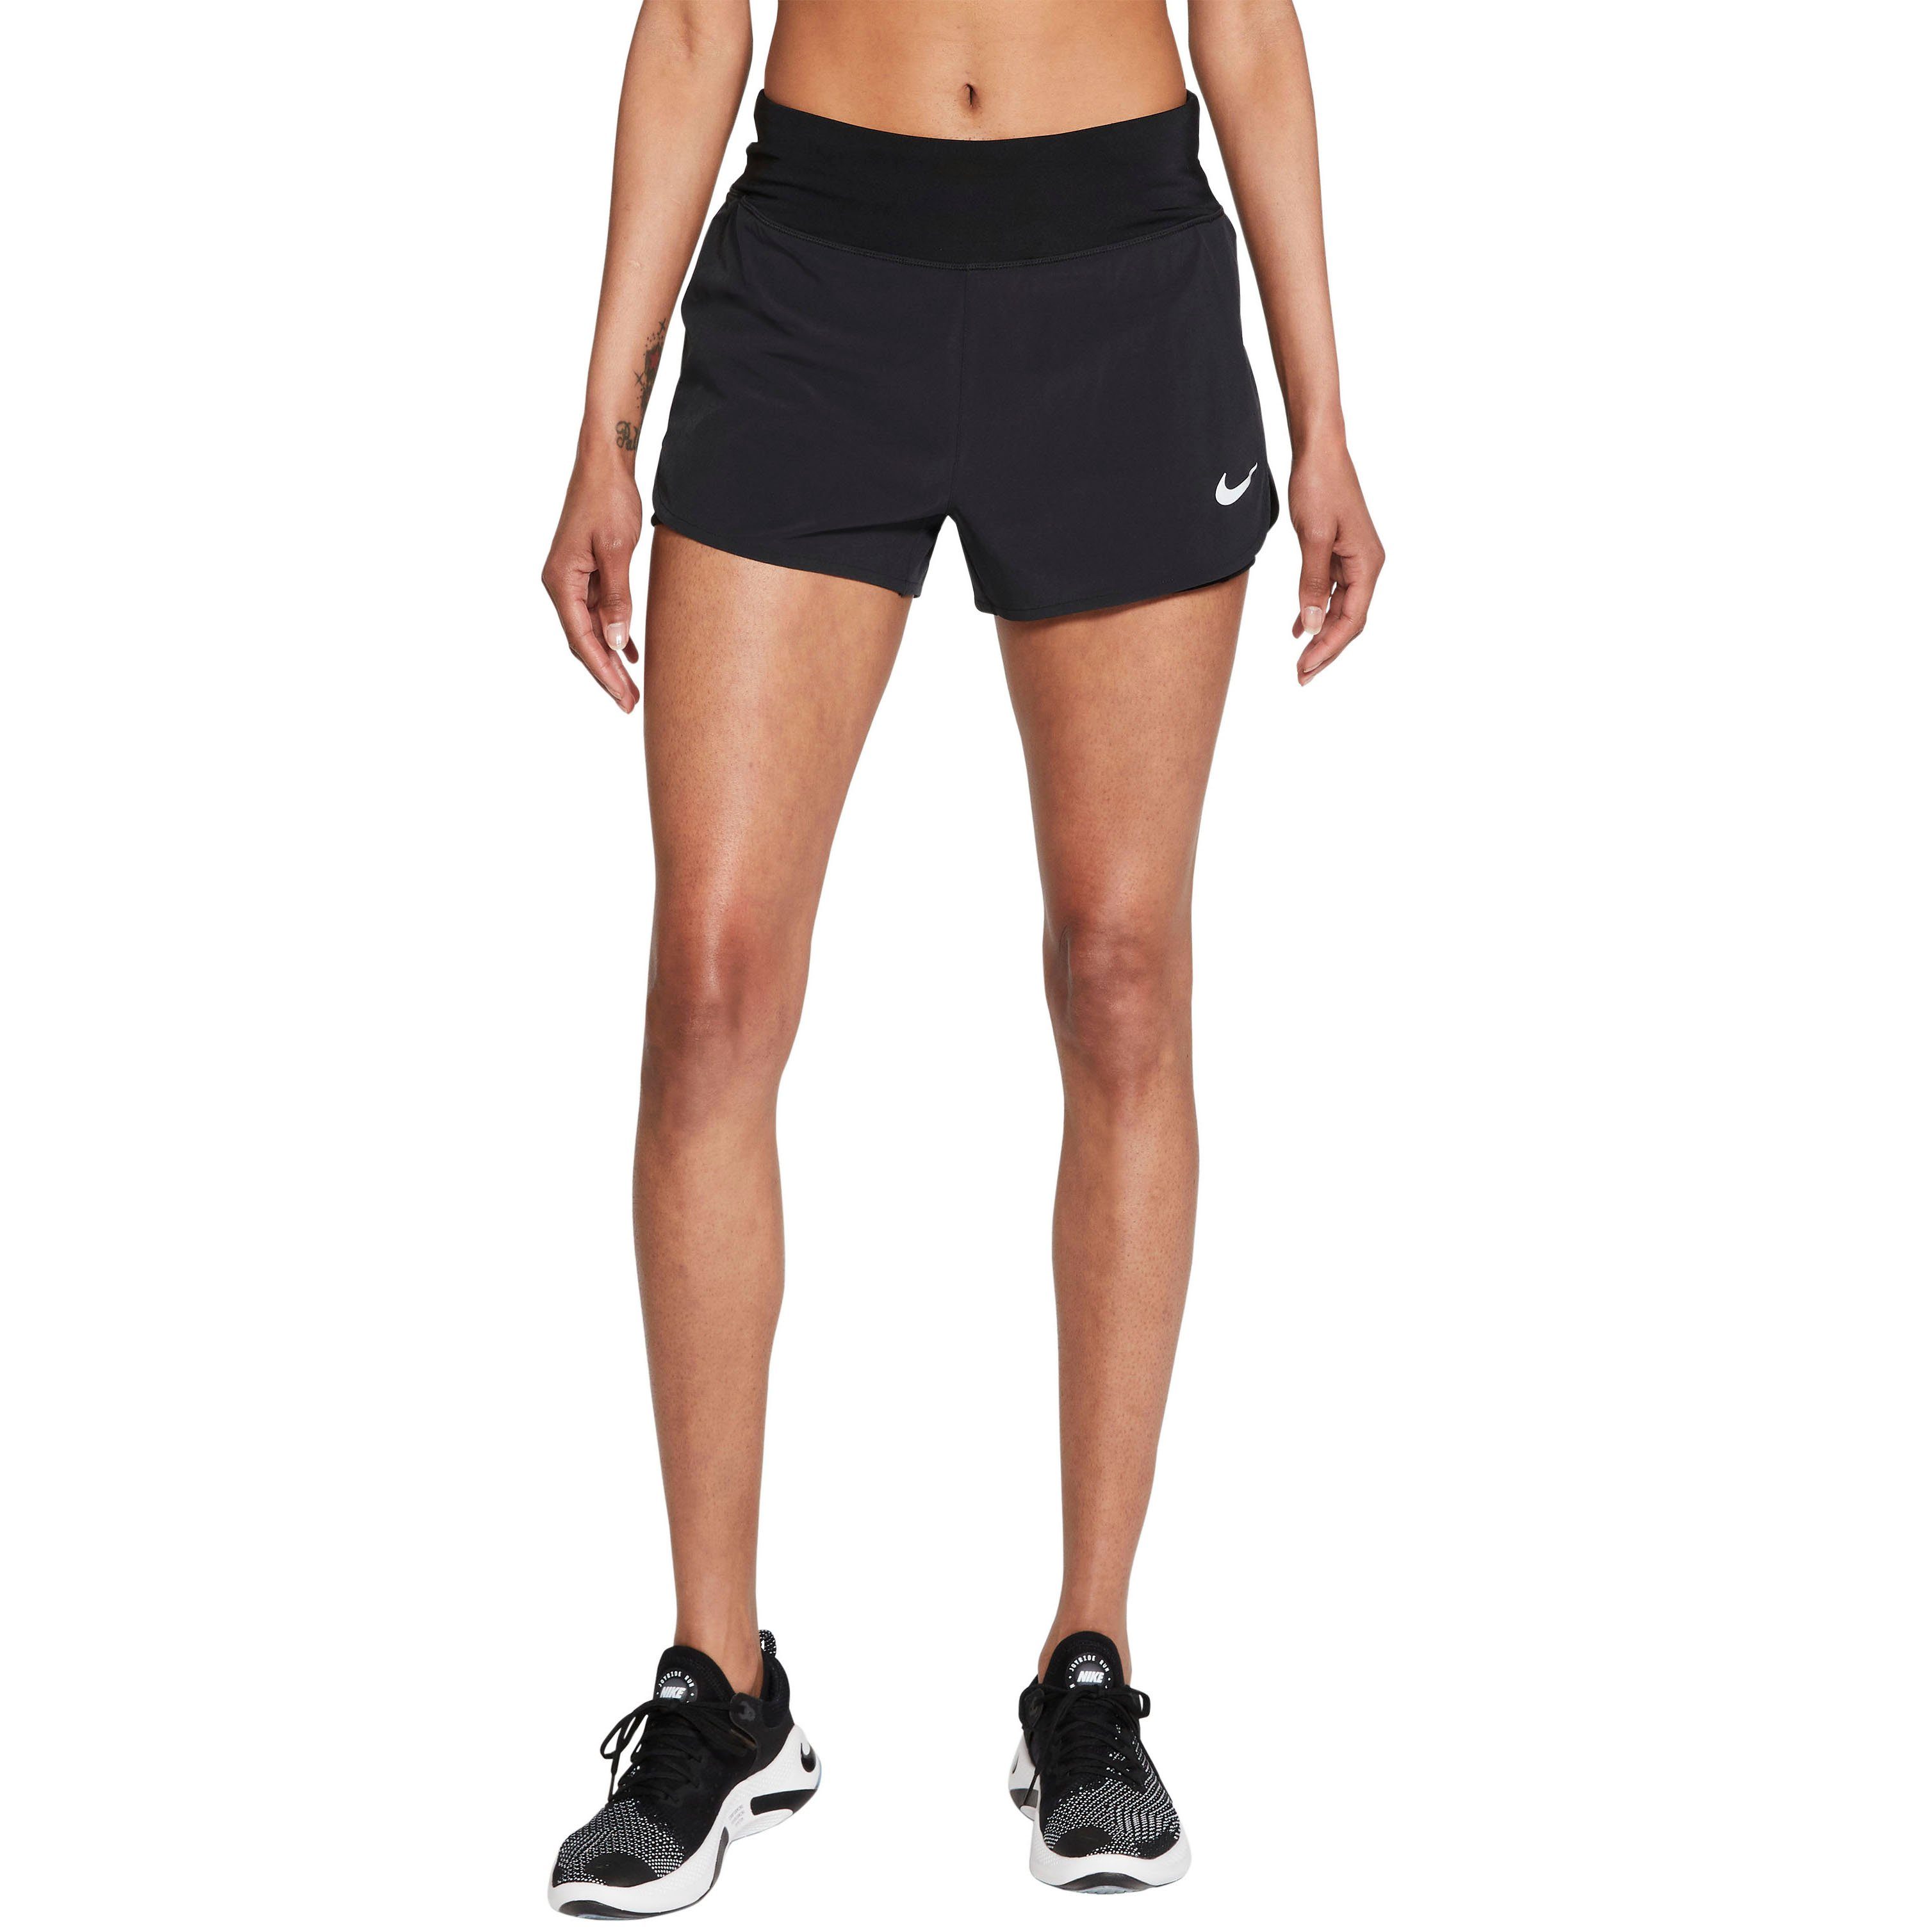 Nike Short Damen online kaufen | OTTO